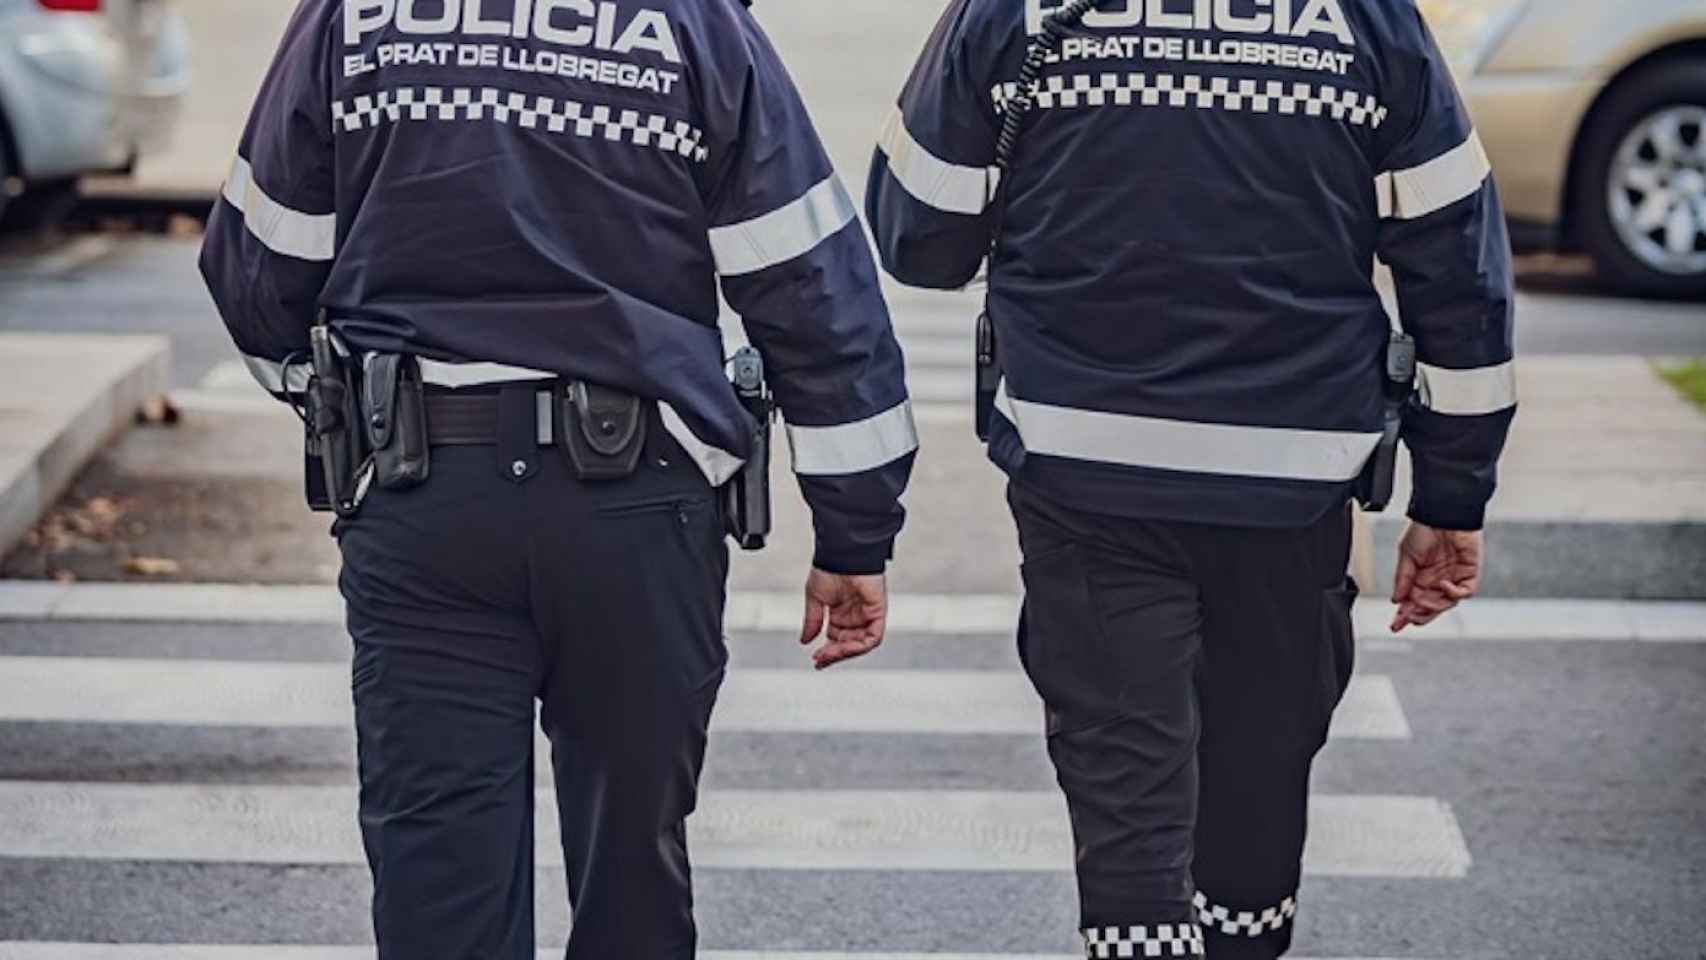 La Policía Local del Prat de Llobregat patrulla las calles / AJUNTAMENT EL PRAT